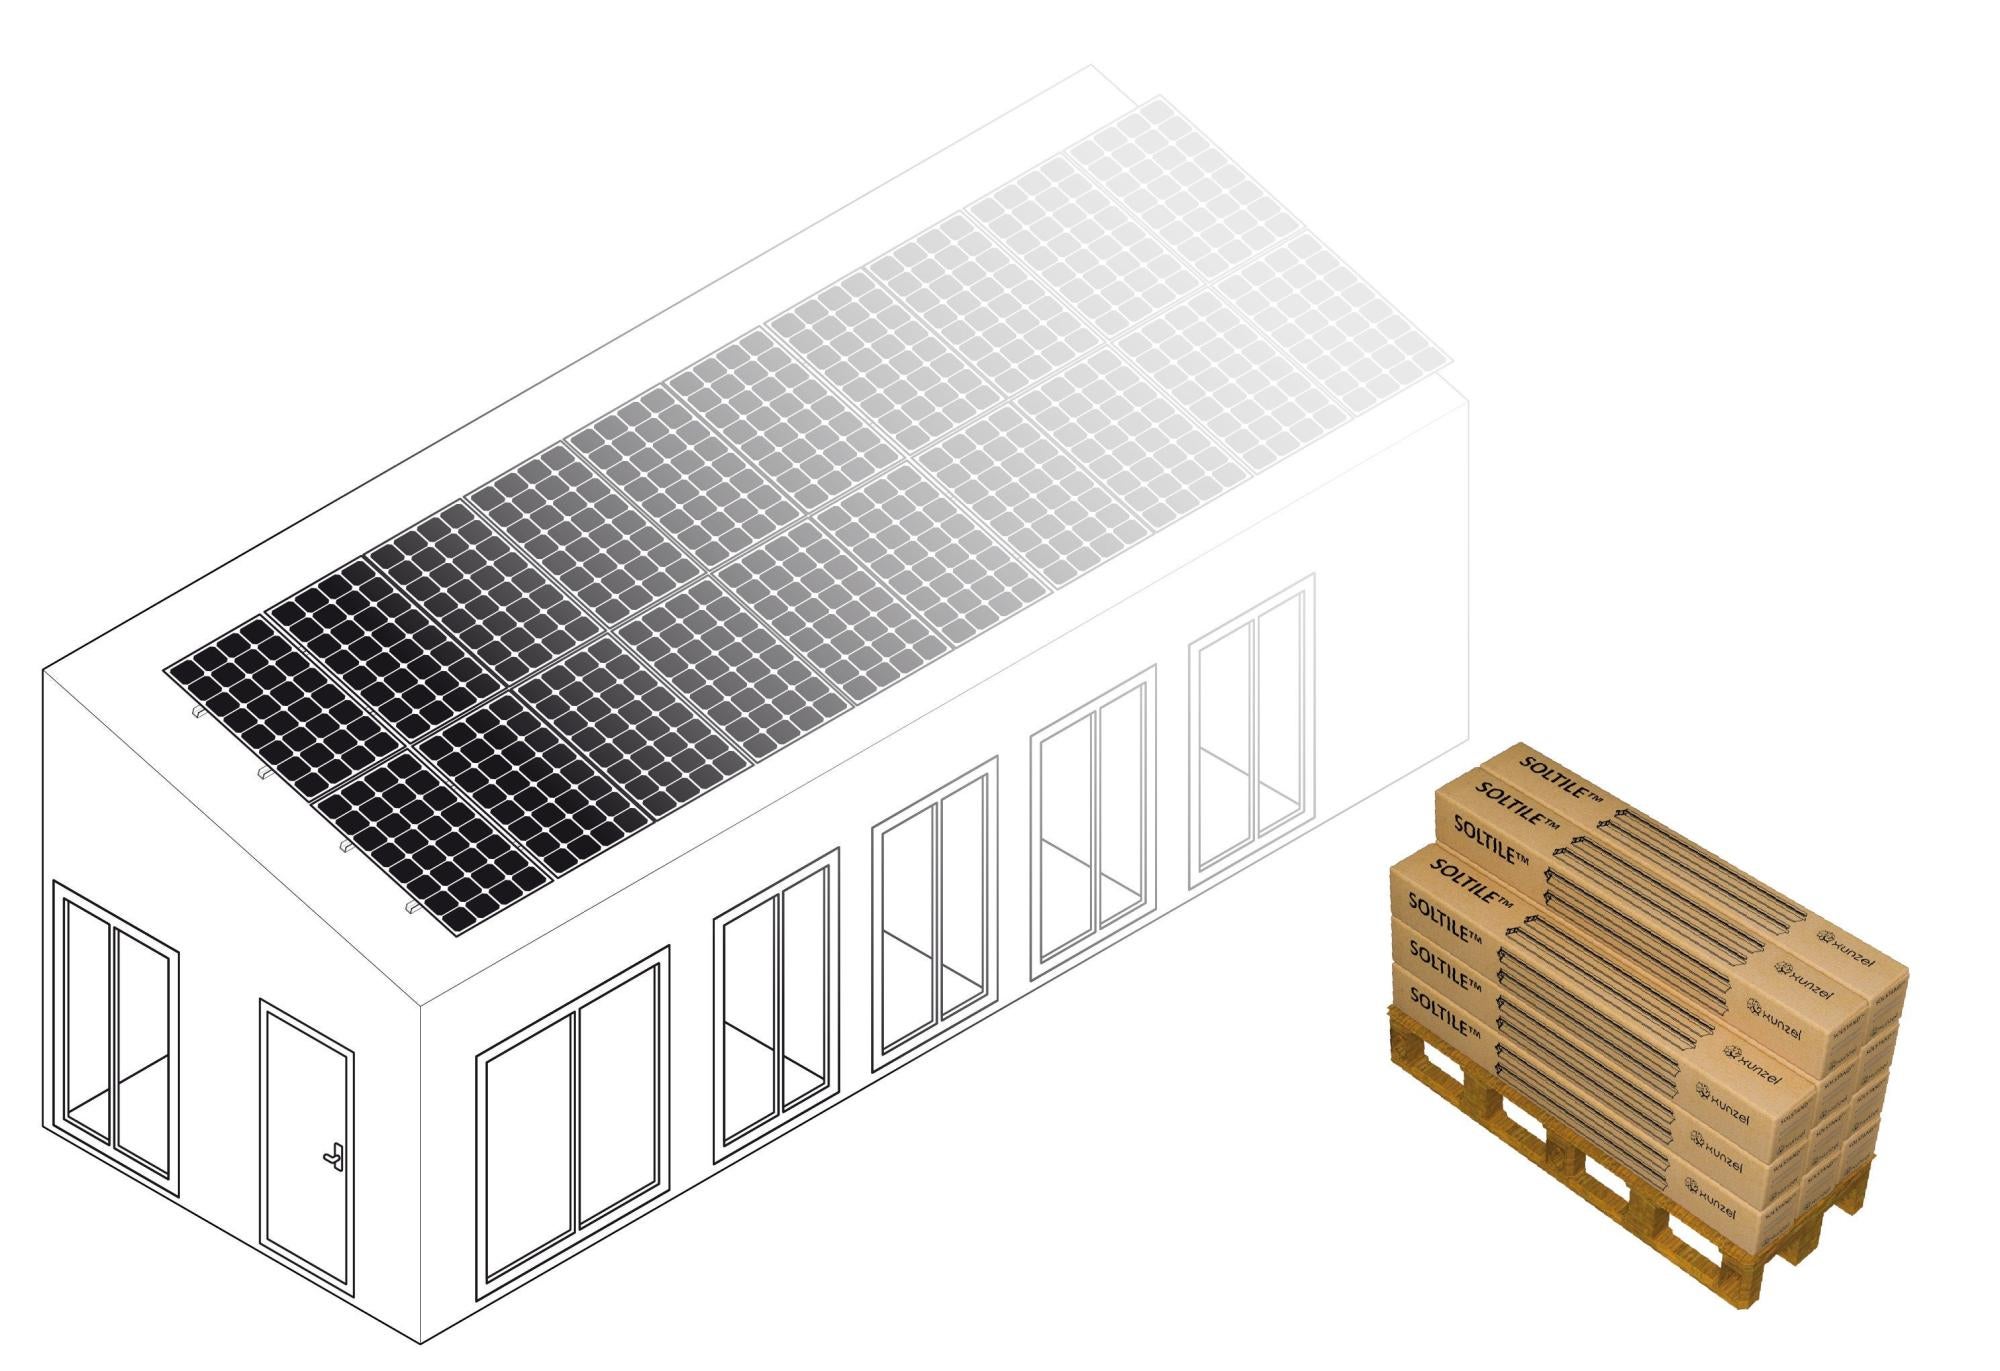 Soporte para tejado soltile-36xl para 36 paneles solarpower-425w